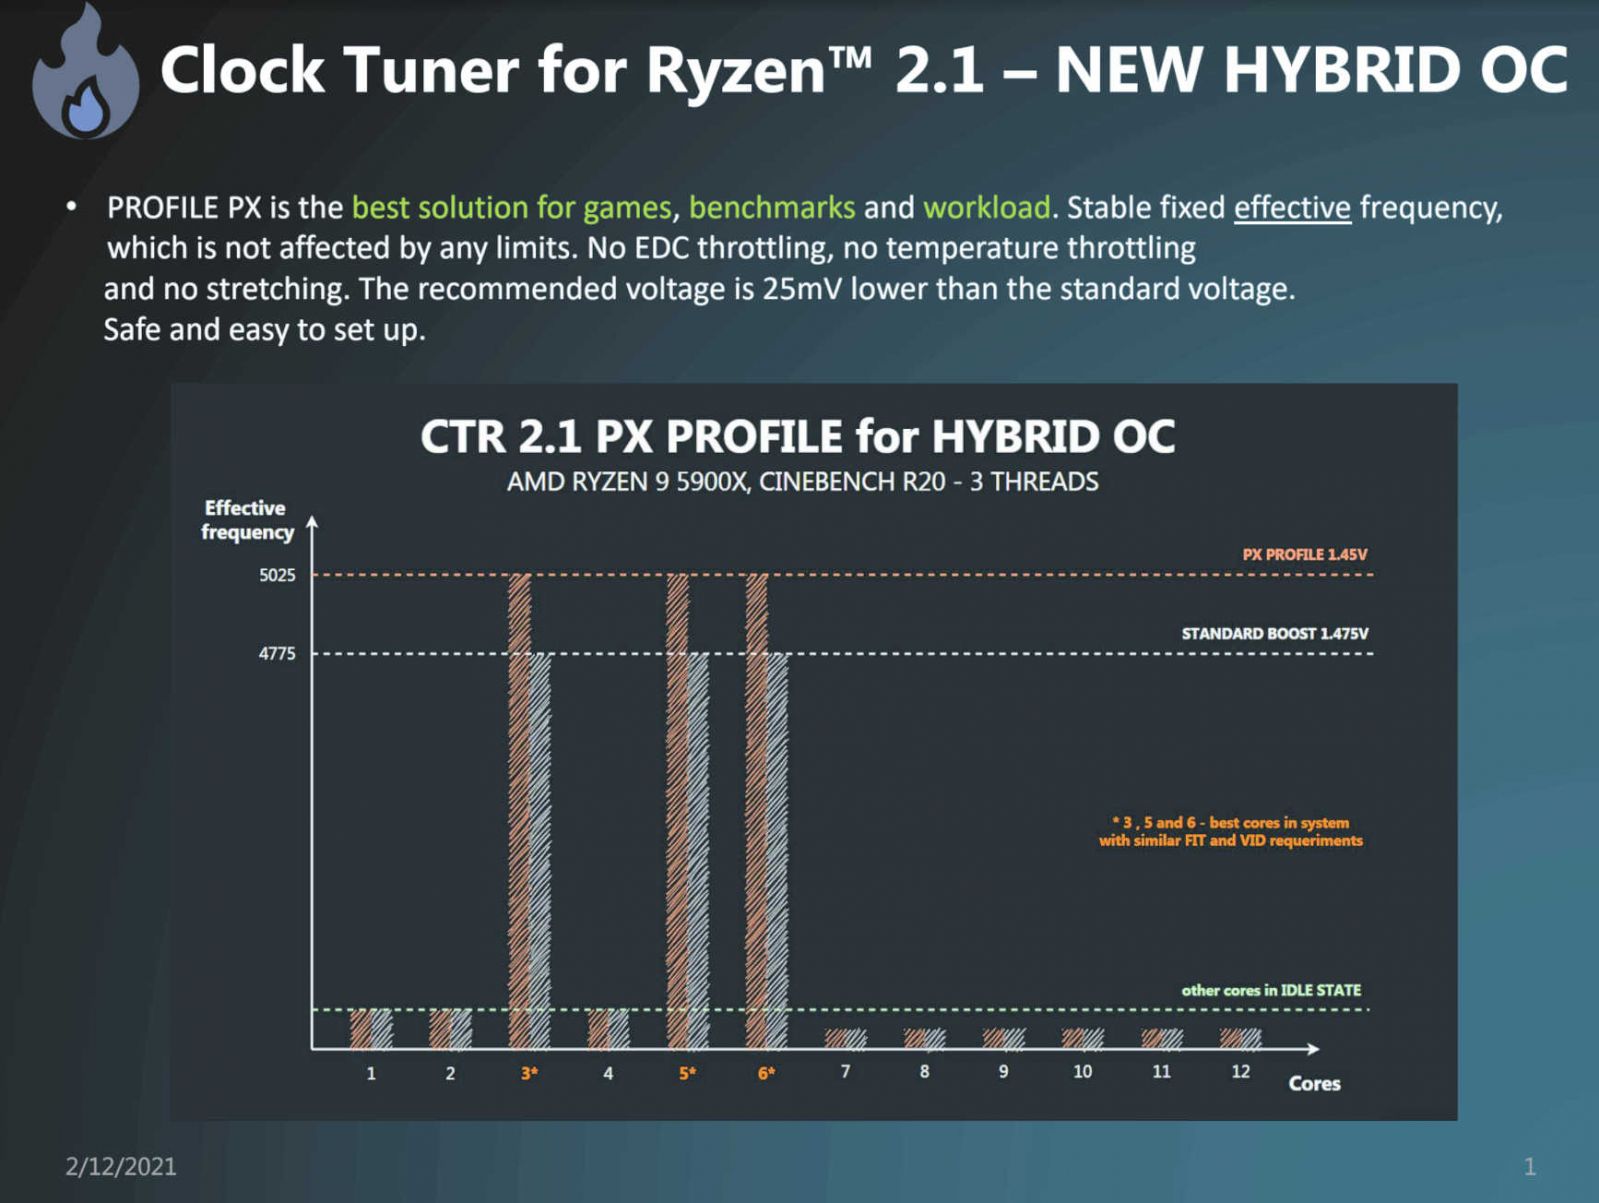 Clock-Tuner-For-Ryzen-2.1-Hybrid-OC.jpg